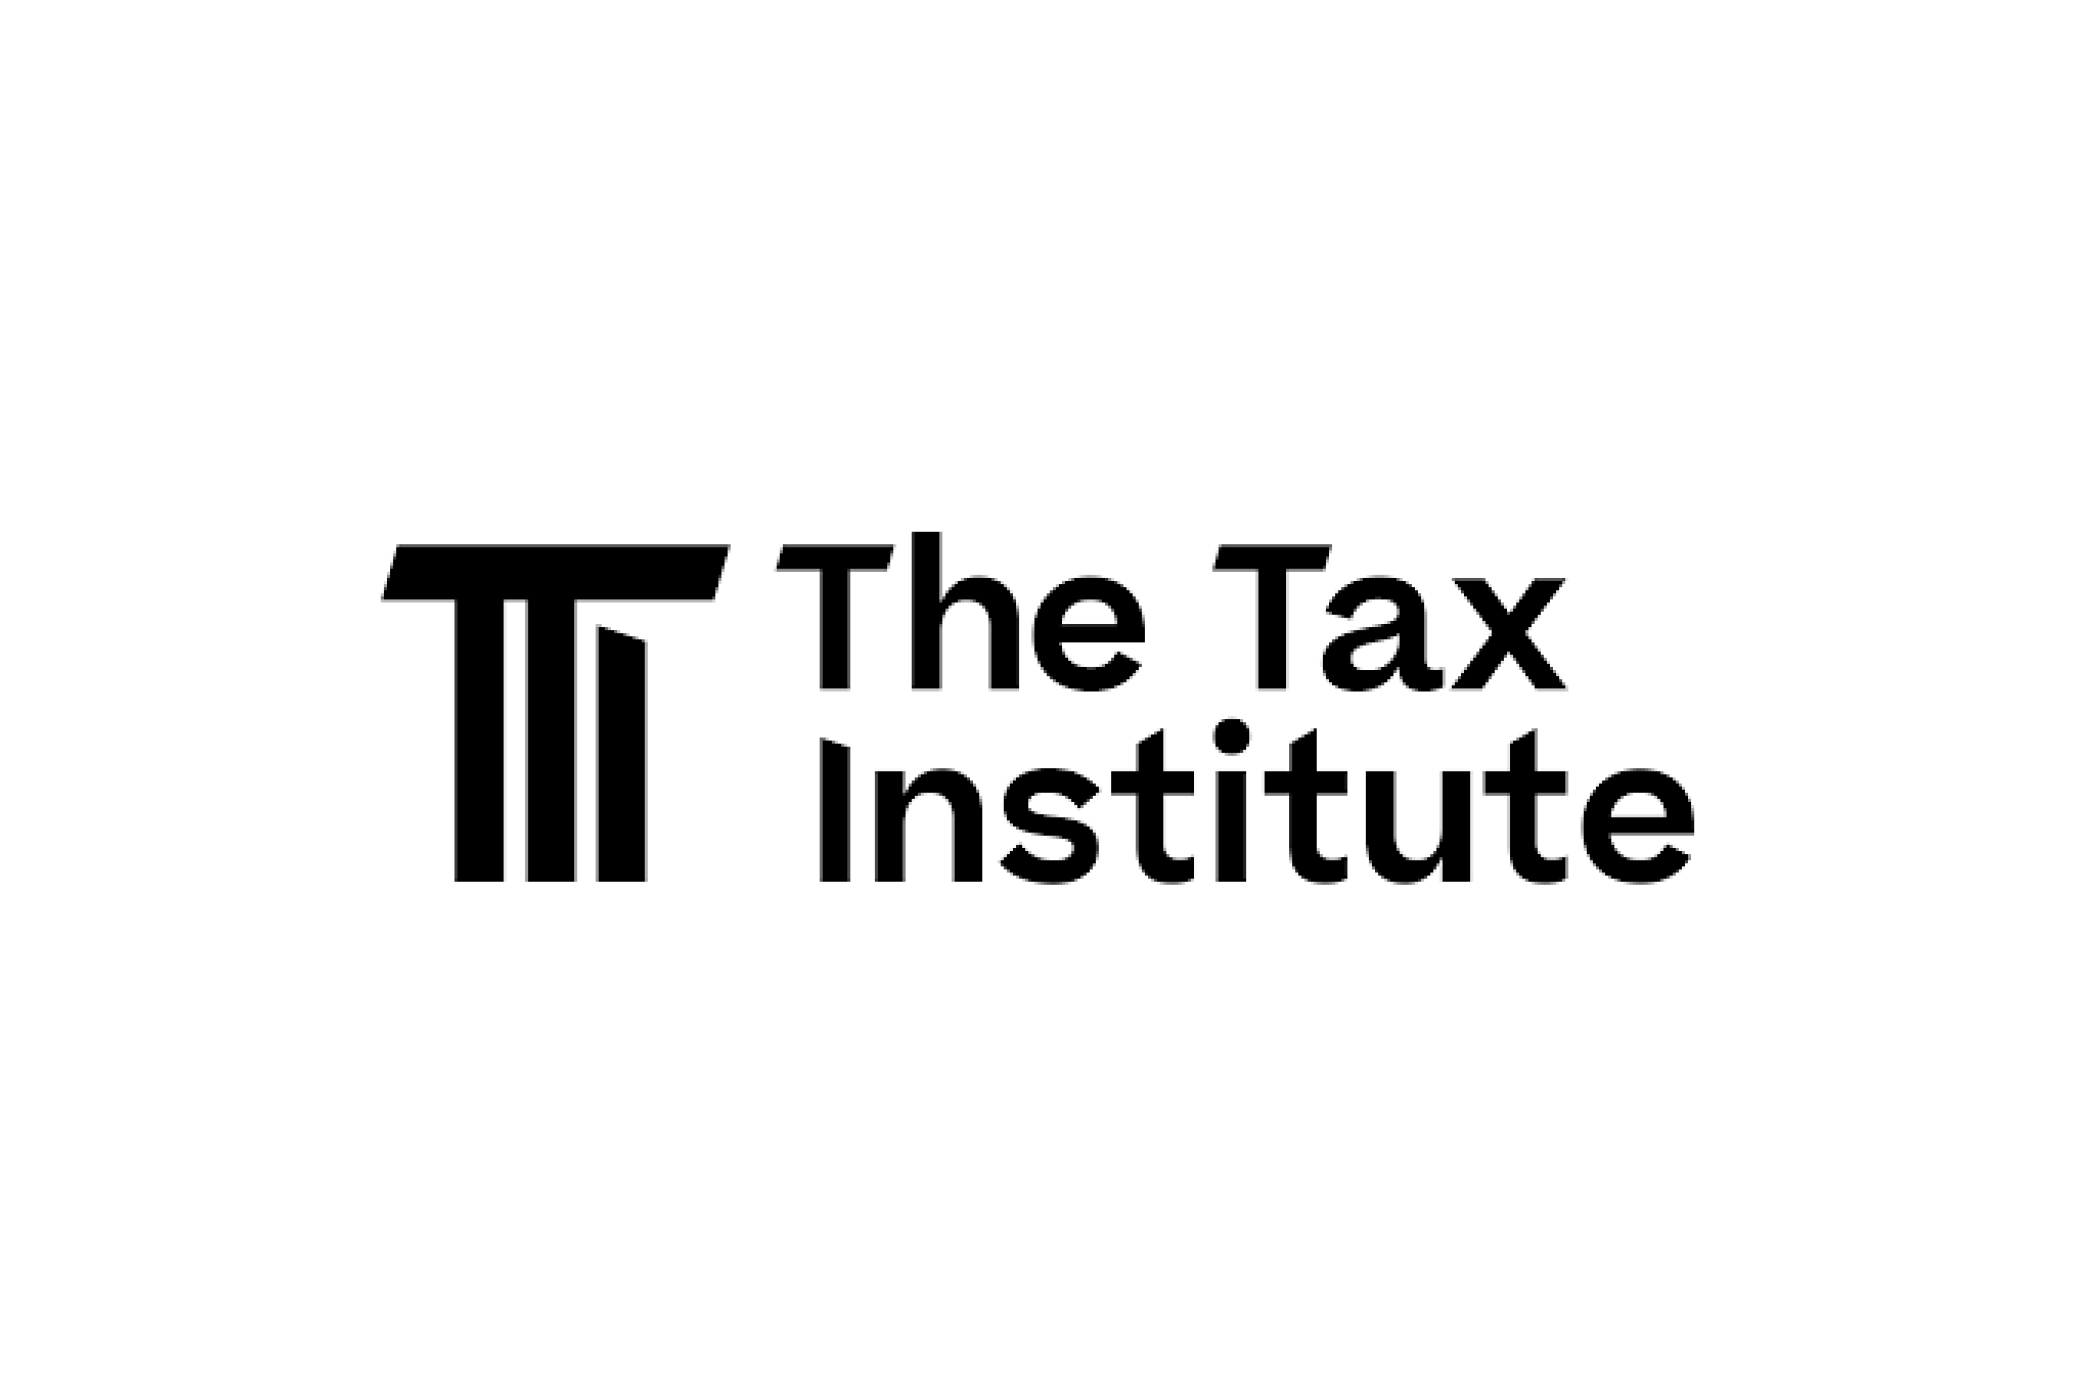 The Tax Institute